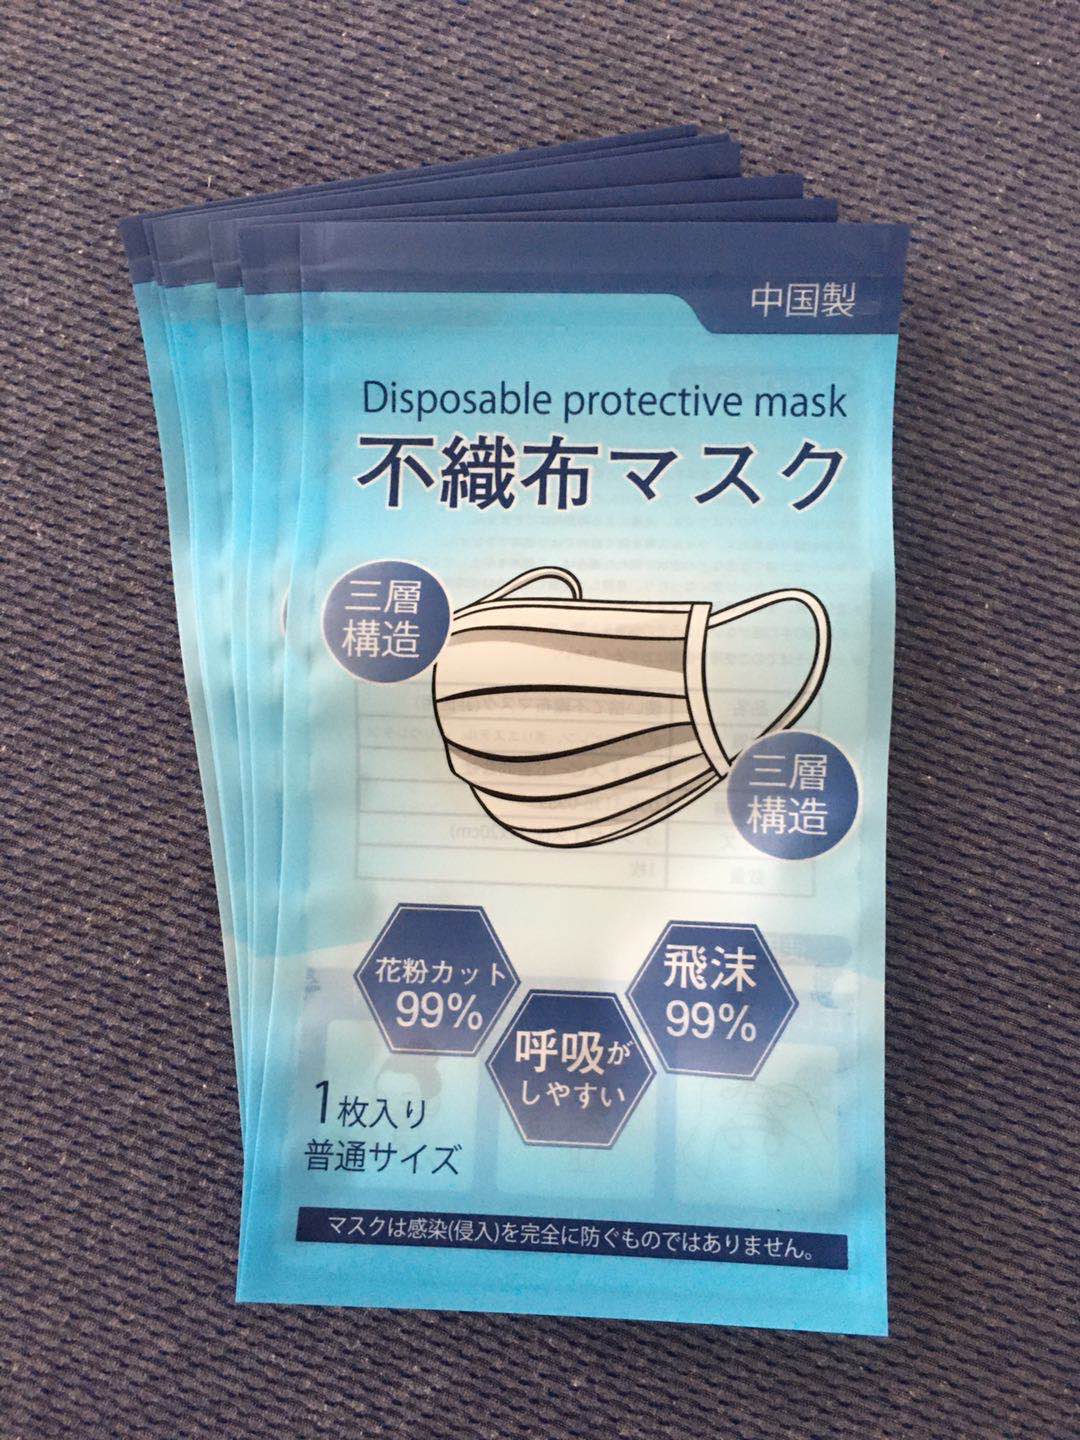 厂家定制日文版口罩包装袋子图片